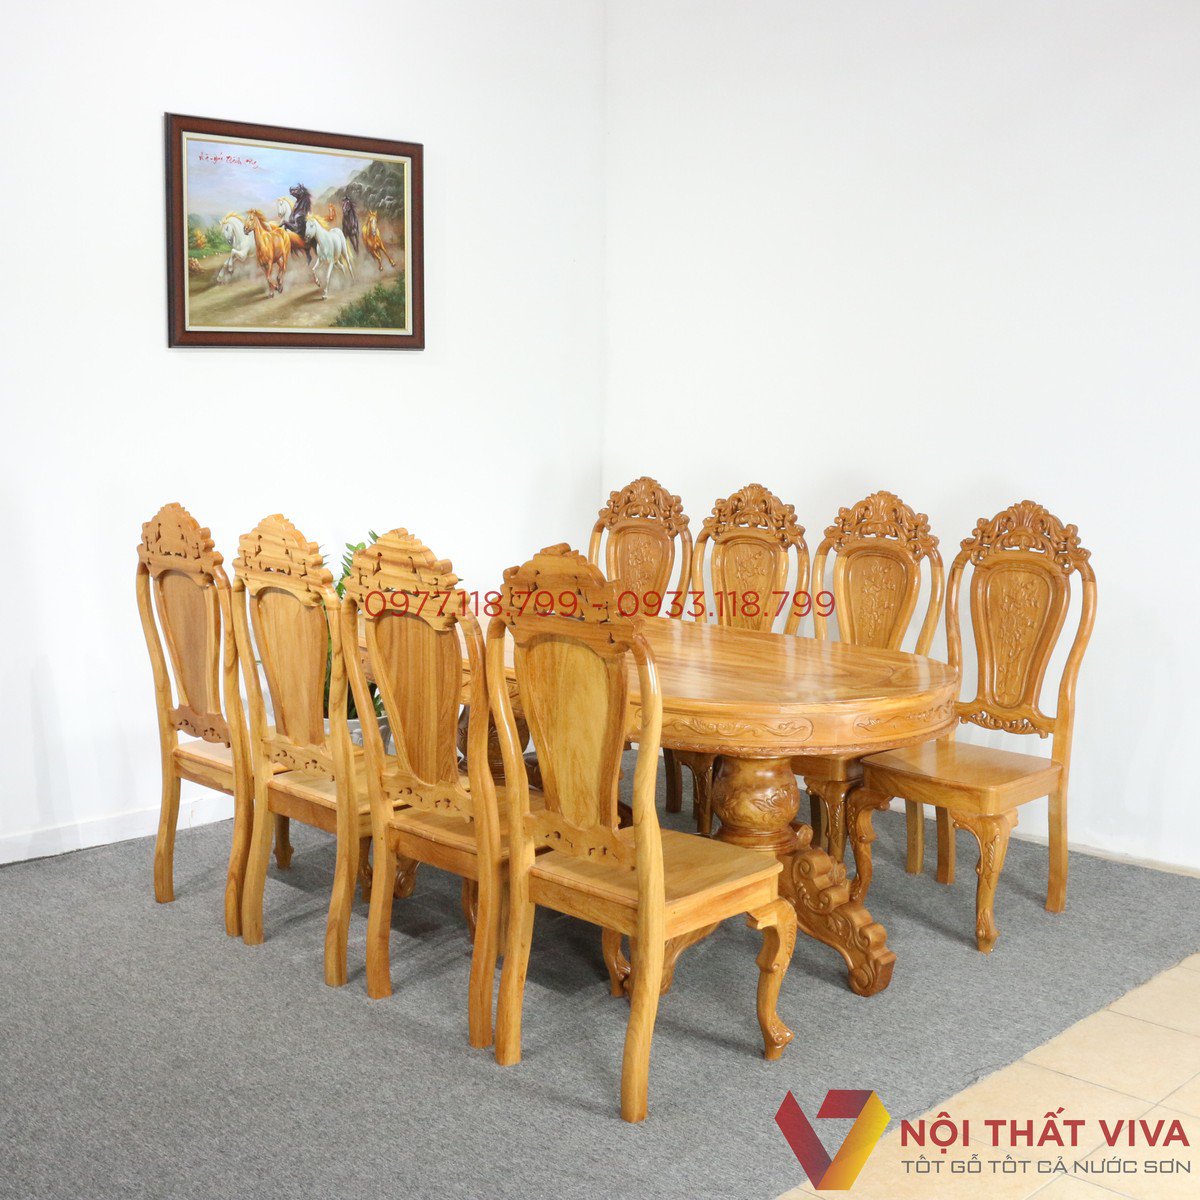 Nội thất Viva – Nơi cung cấp giá bàn ăn bằng gỗ tại xưởng